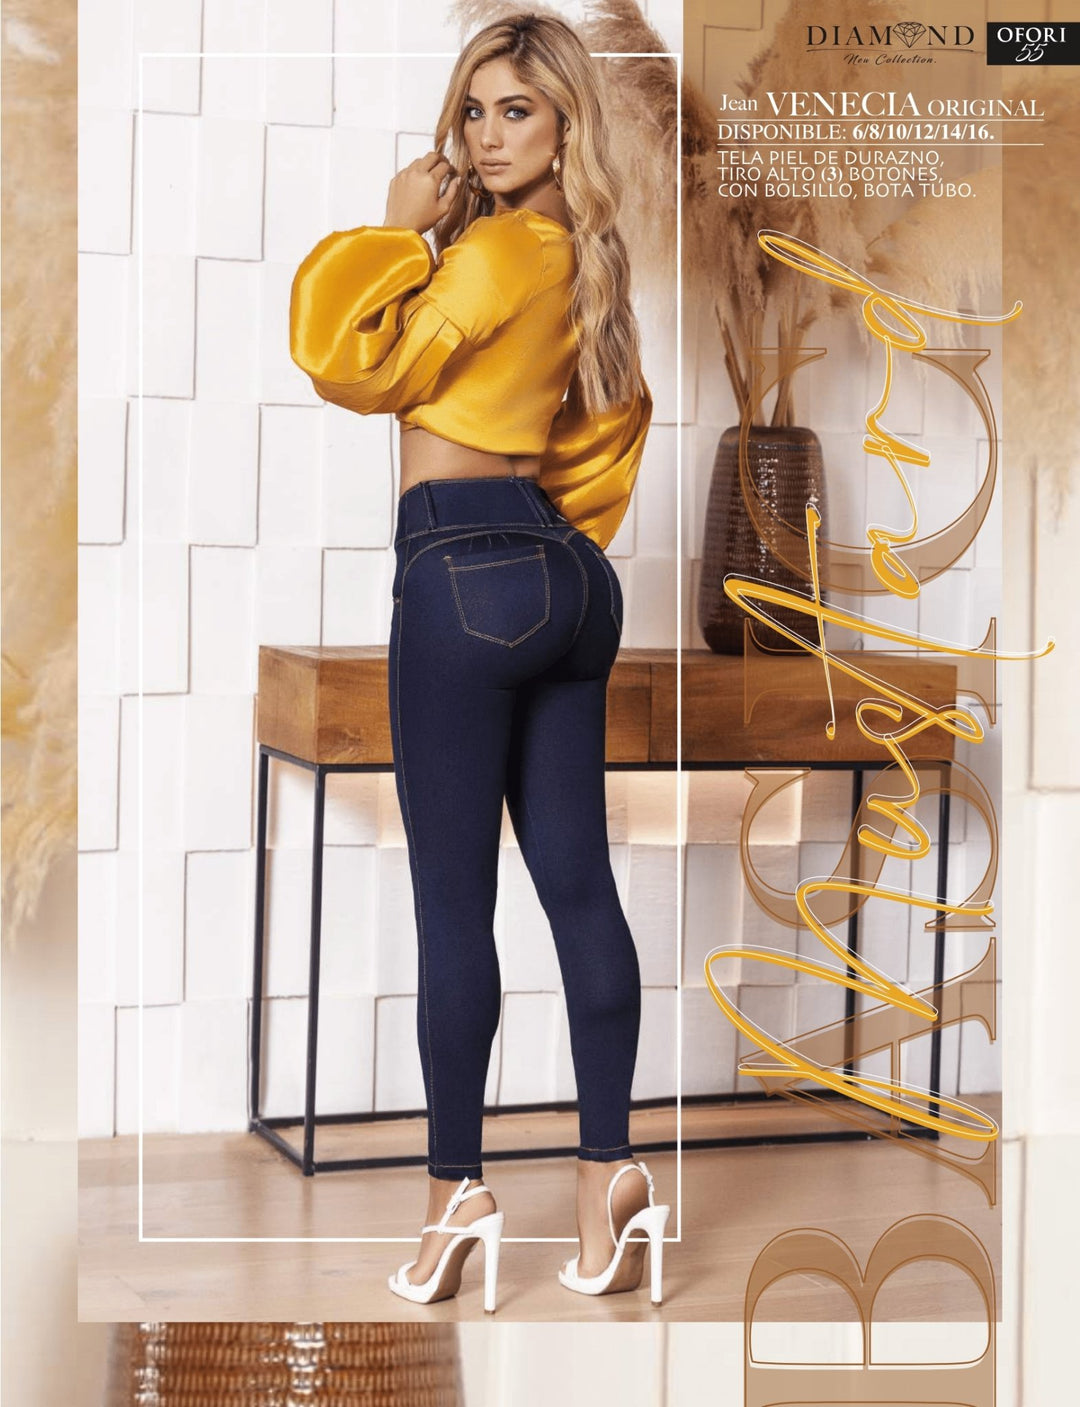 Venecia Original 100% Authentic Colombian Push Up Jeans – JDColFashion